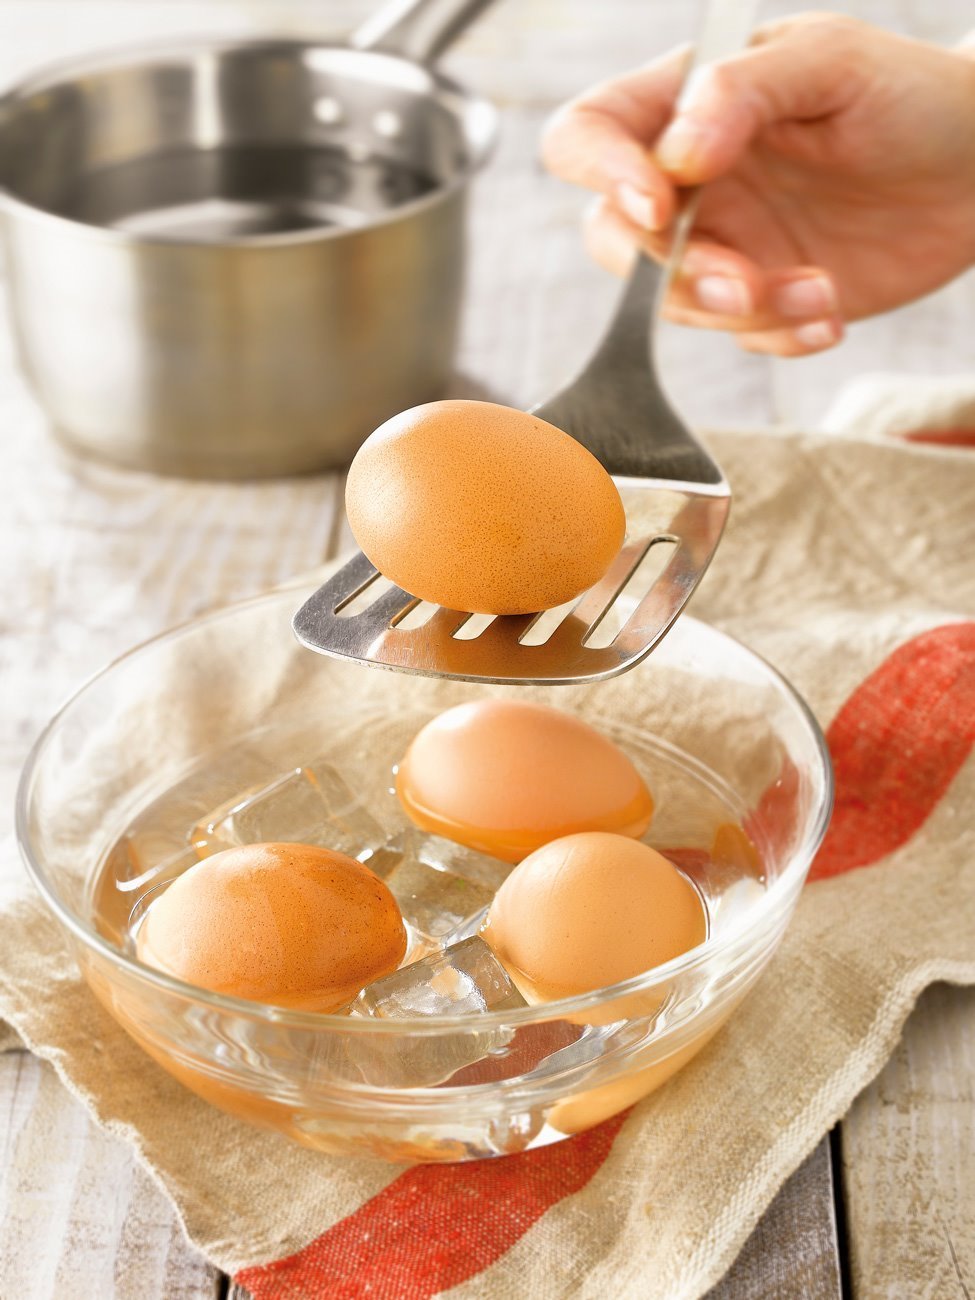 1. Cuece y refresca los huevos